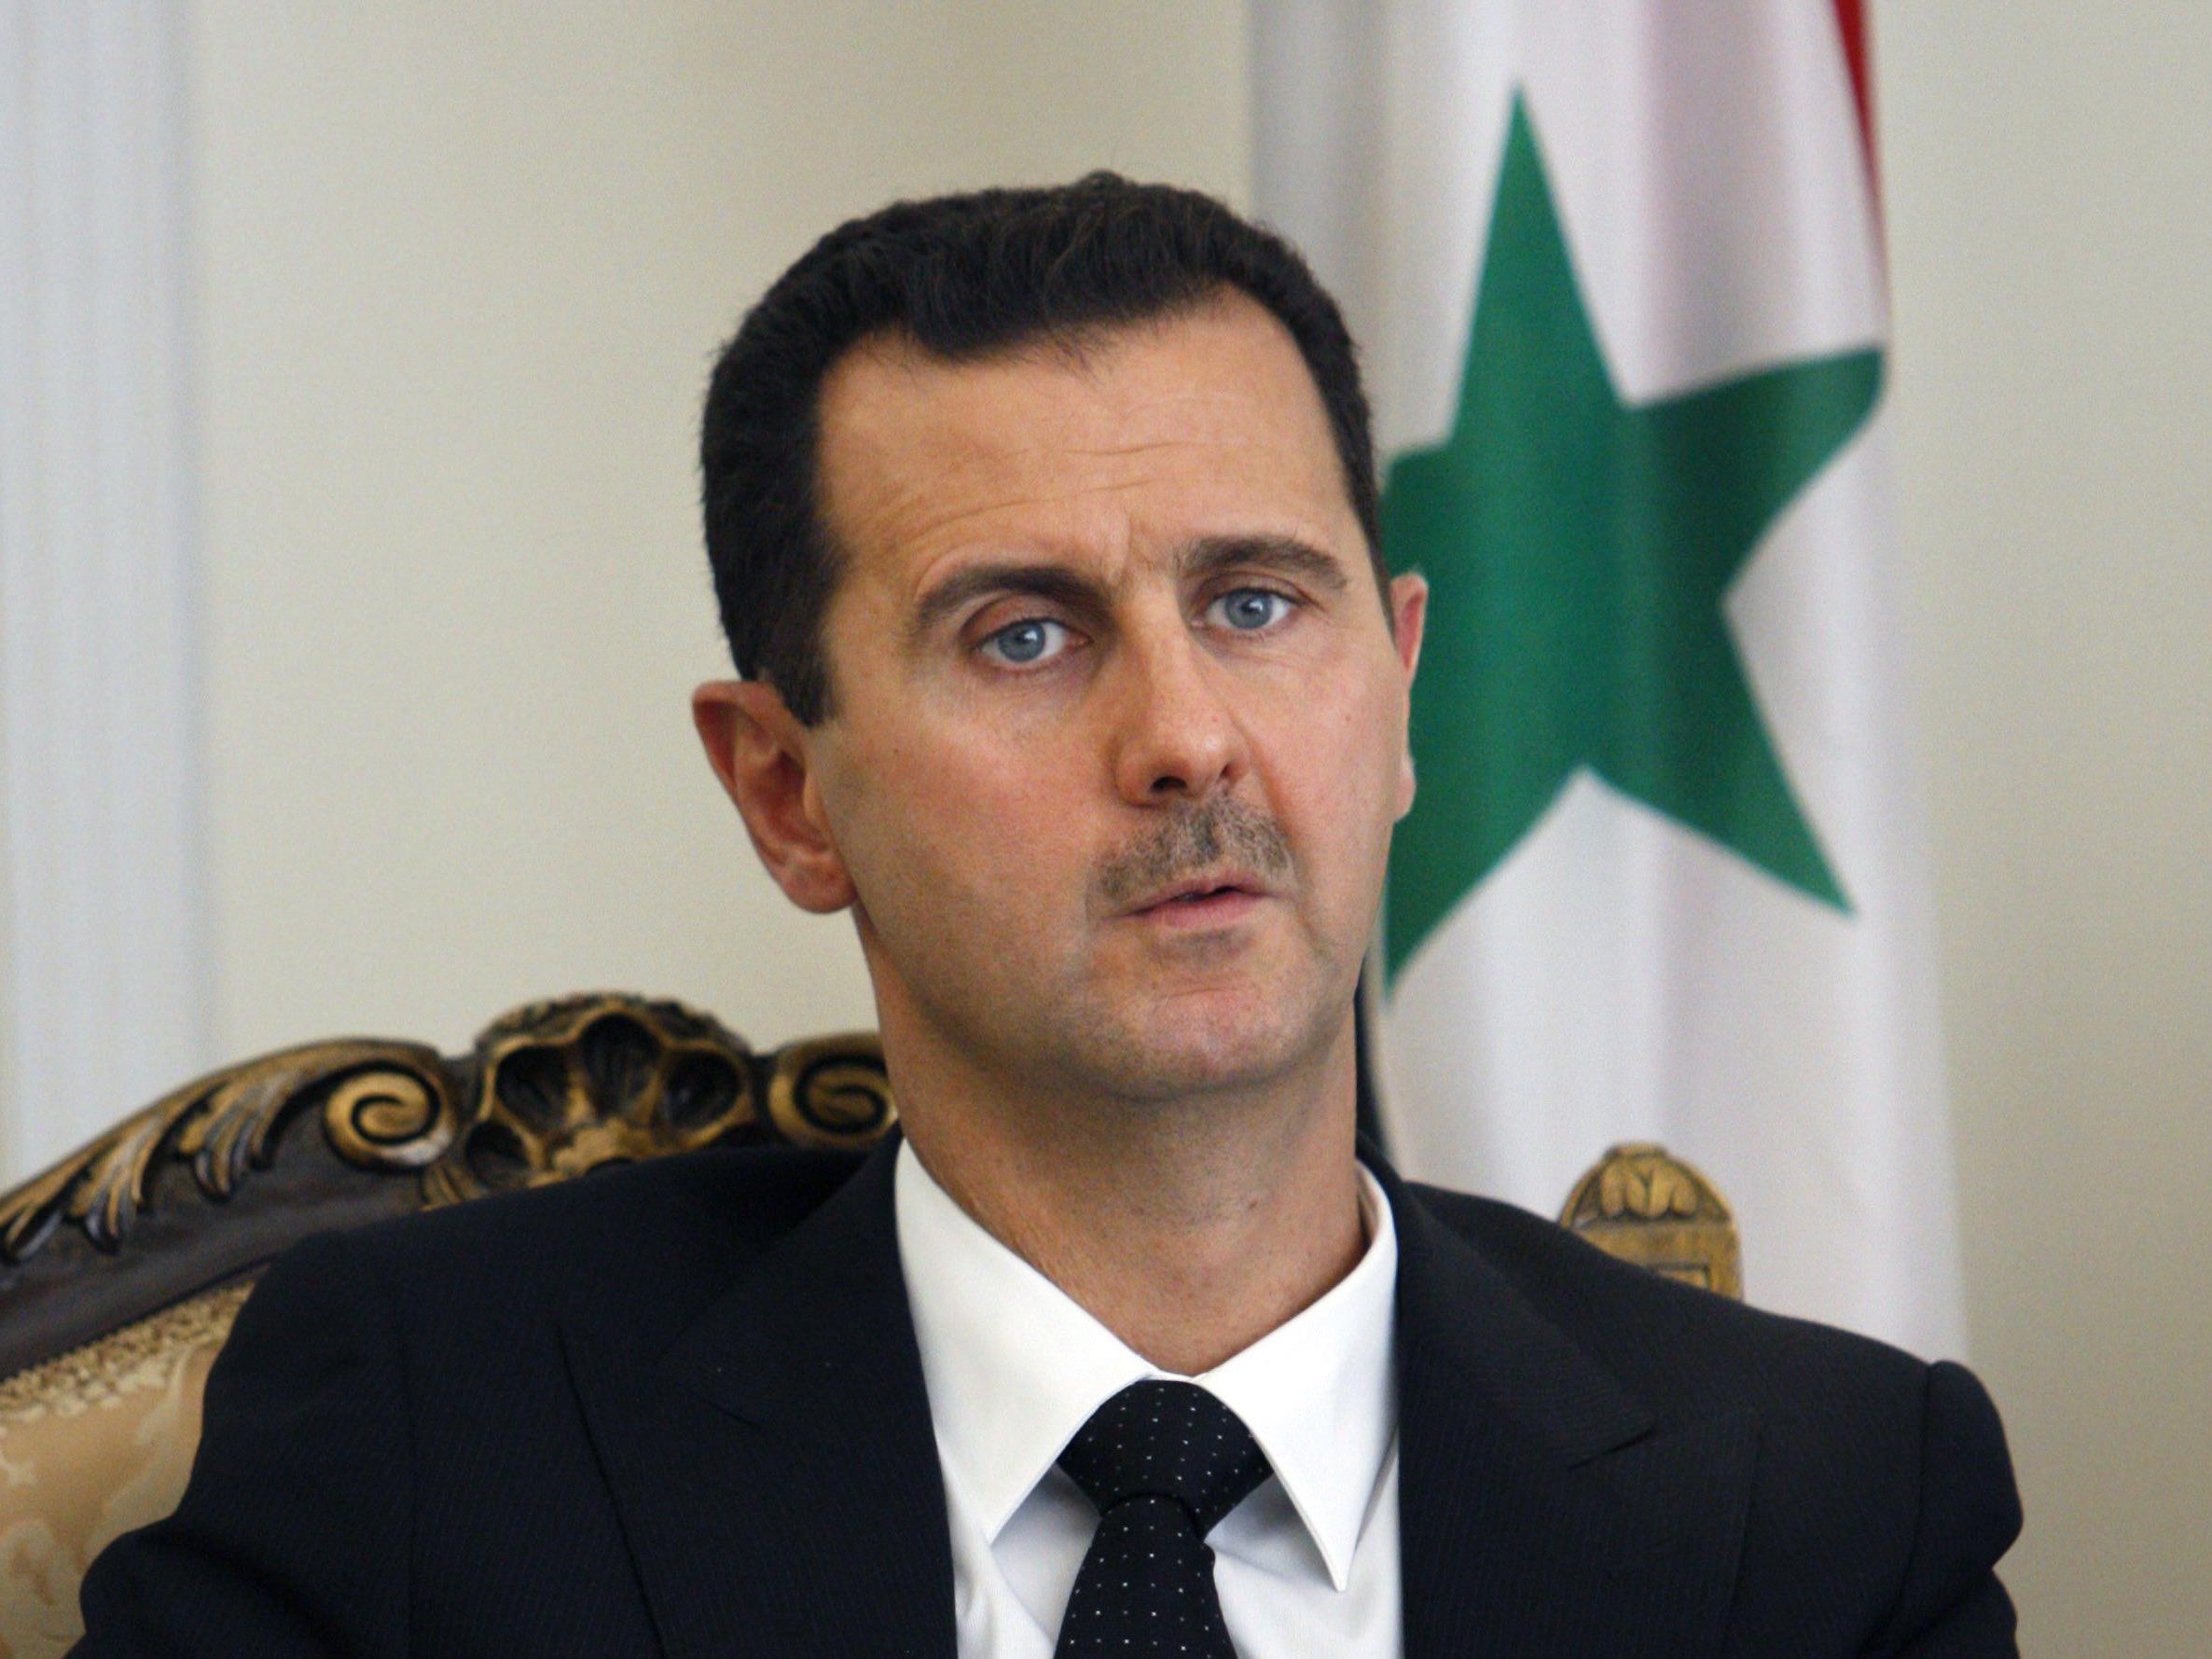 Assad plötzlich wieder erstarkt - Experten: Dank russischer Hilfe und westlicher Zögerlichkeit